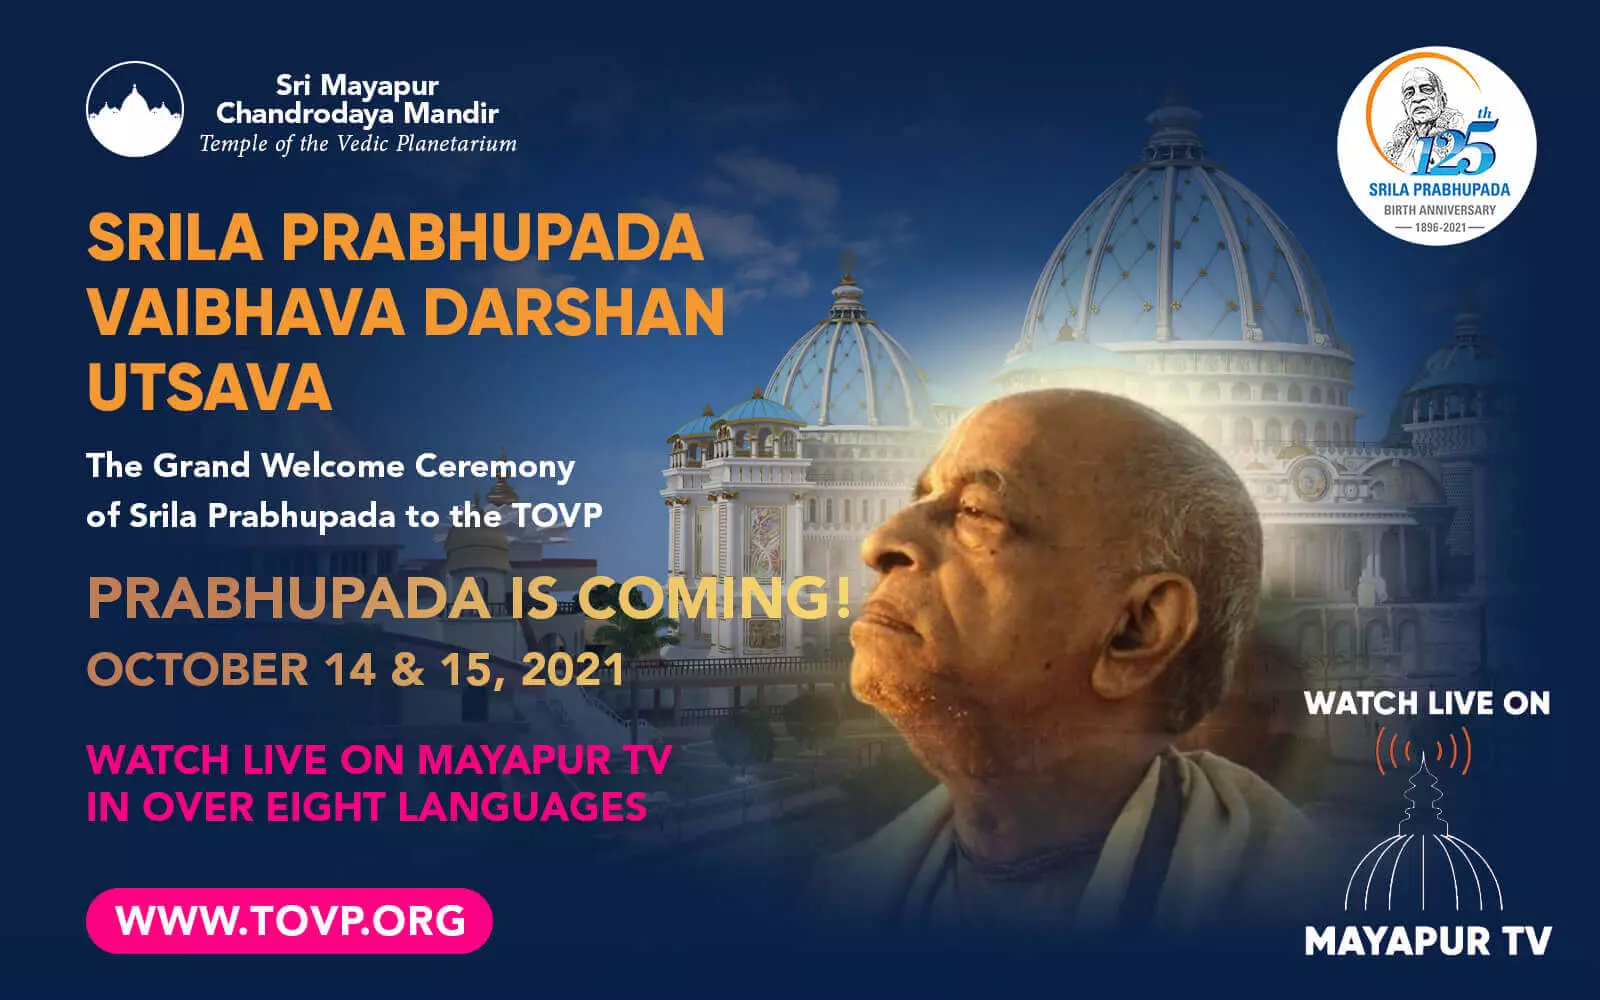 प्रभुपाद TOVP पर आ रहे हैं! 14 और 15 अक्टूबर को मायापुर टीवी पर लाइव देखें